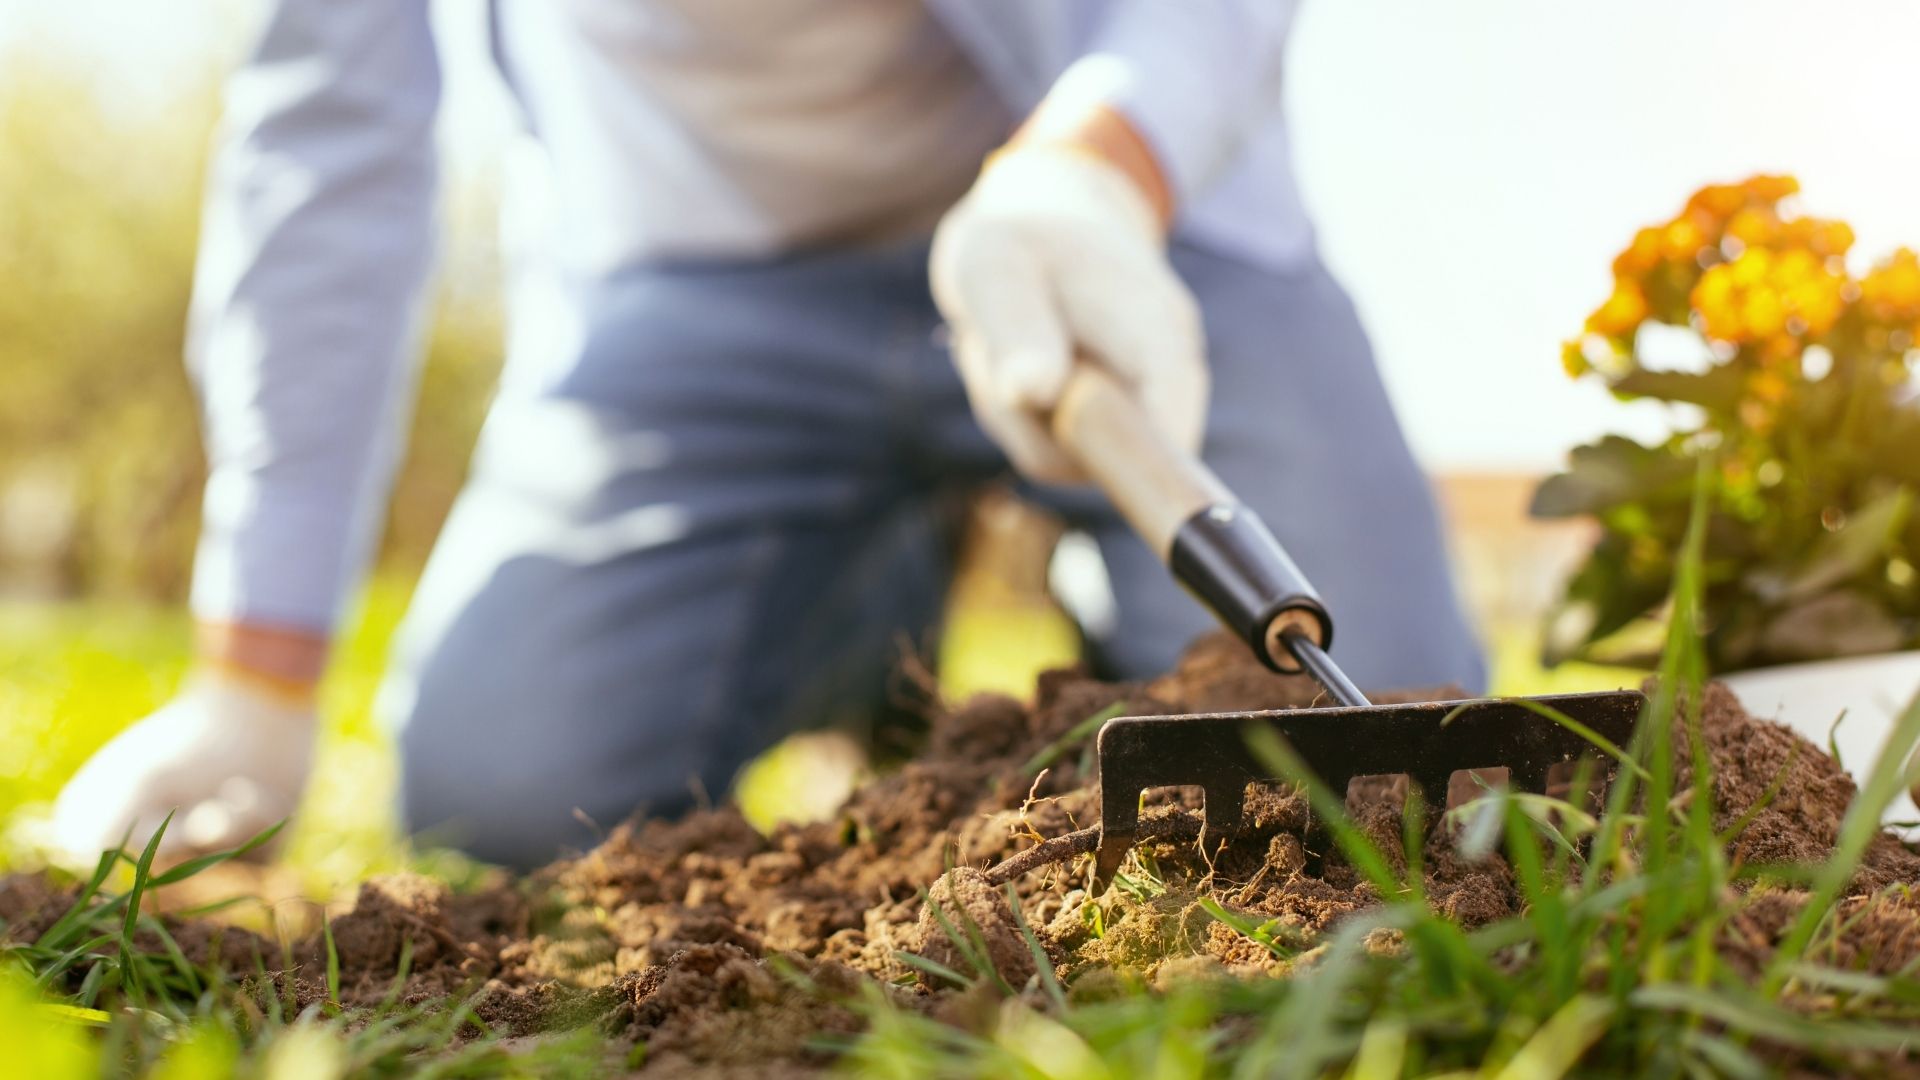 Ways to prevent injuries when gardening